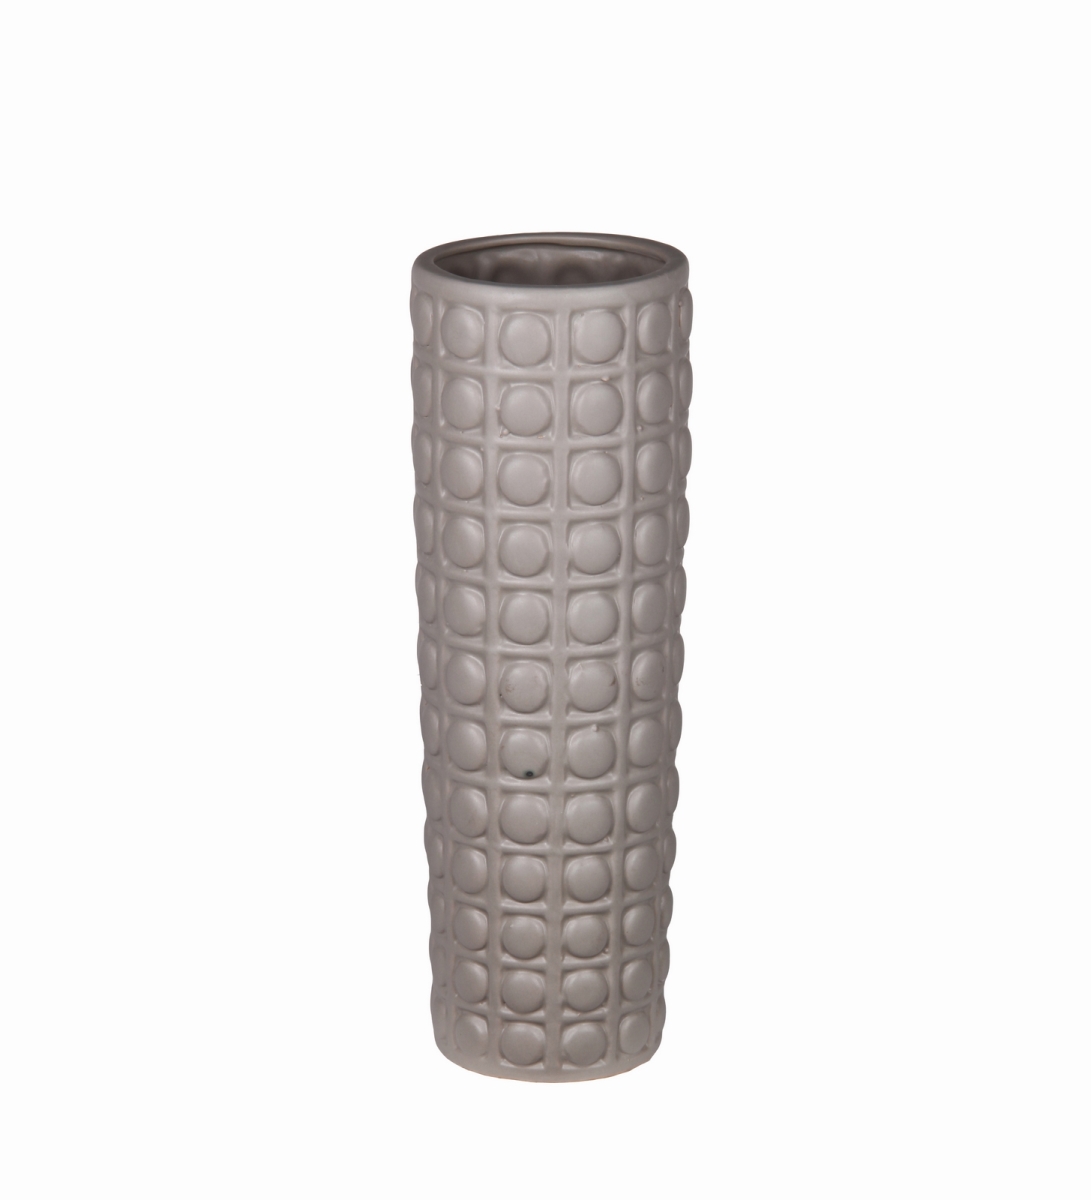 78095 5 X 5 X 15 In. Ceramic Vase, Brown - Small